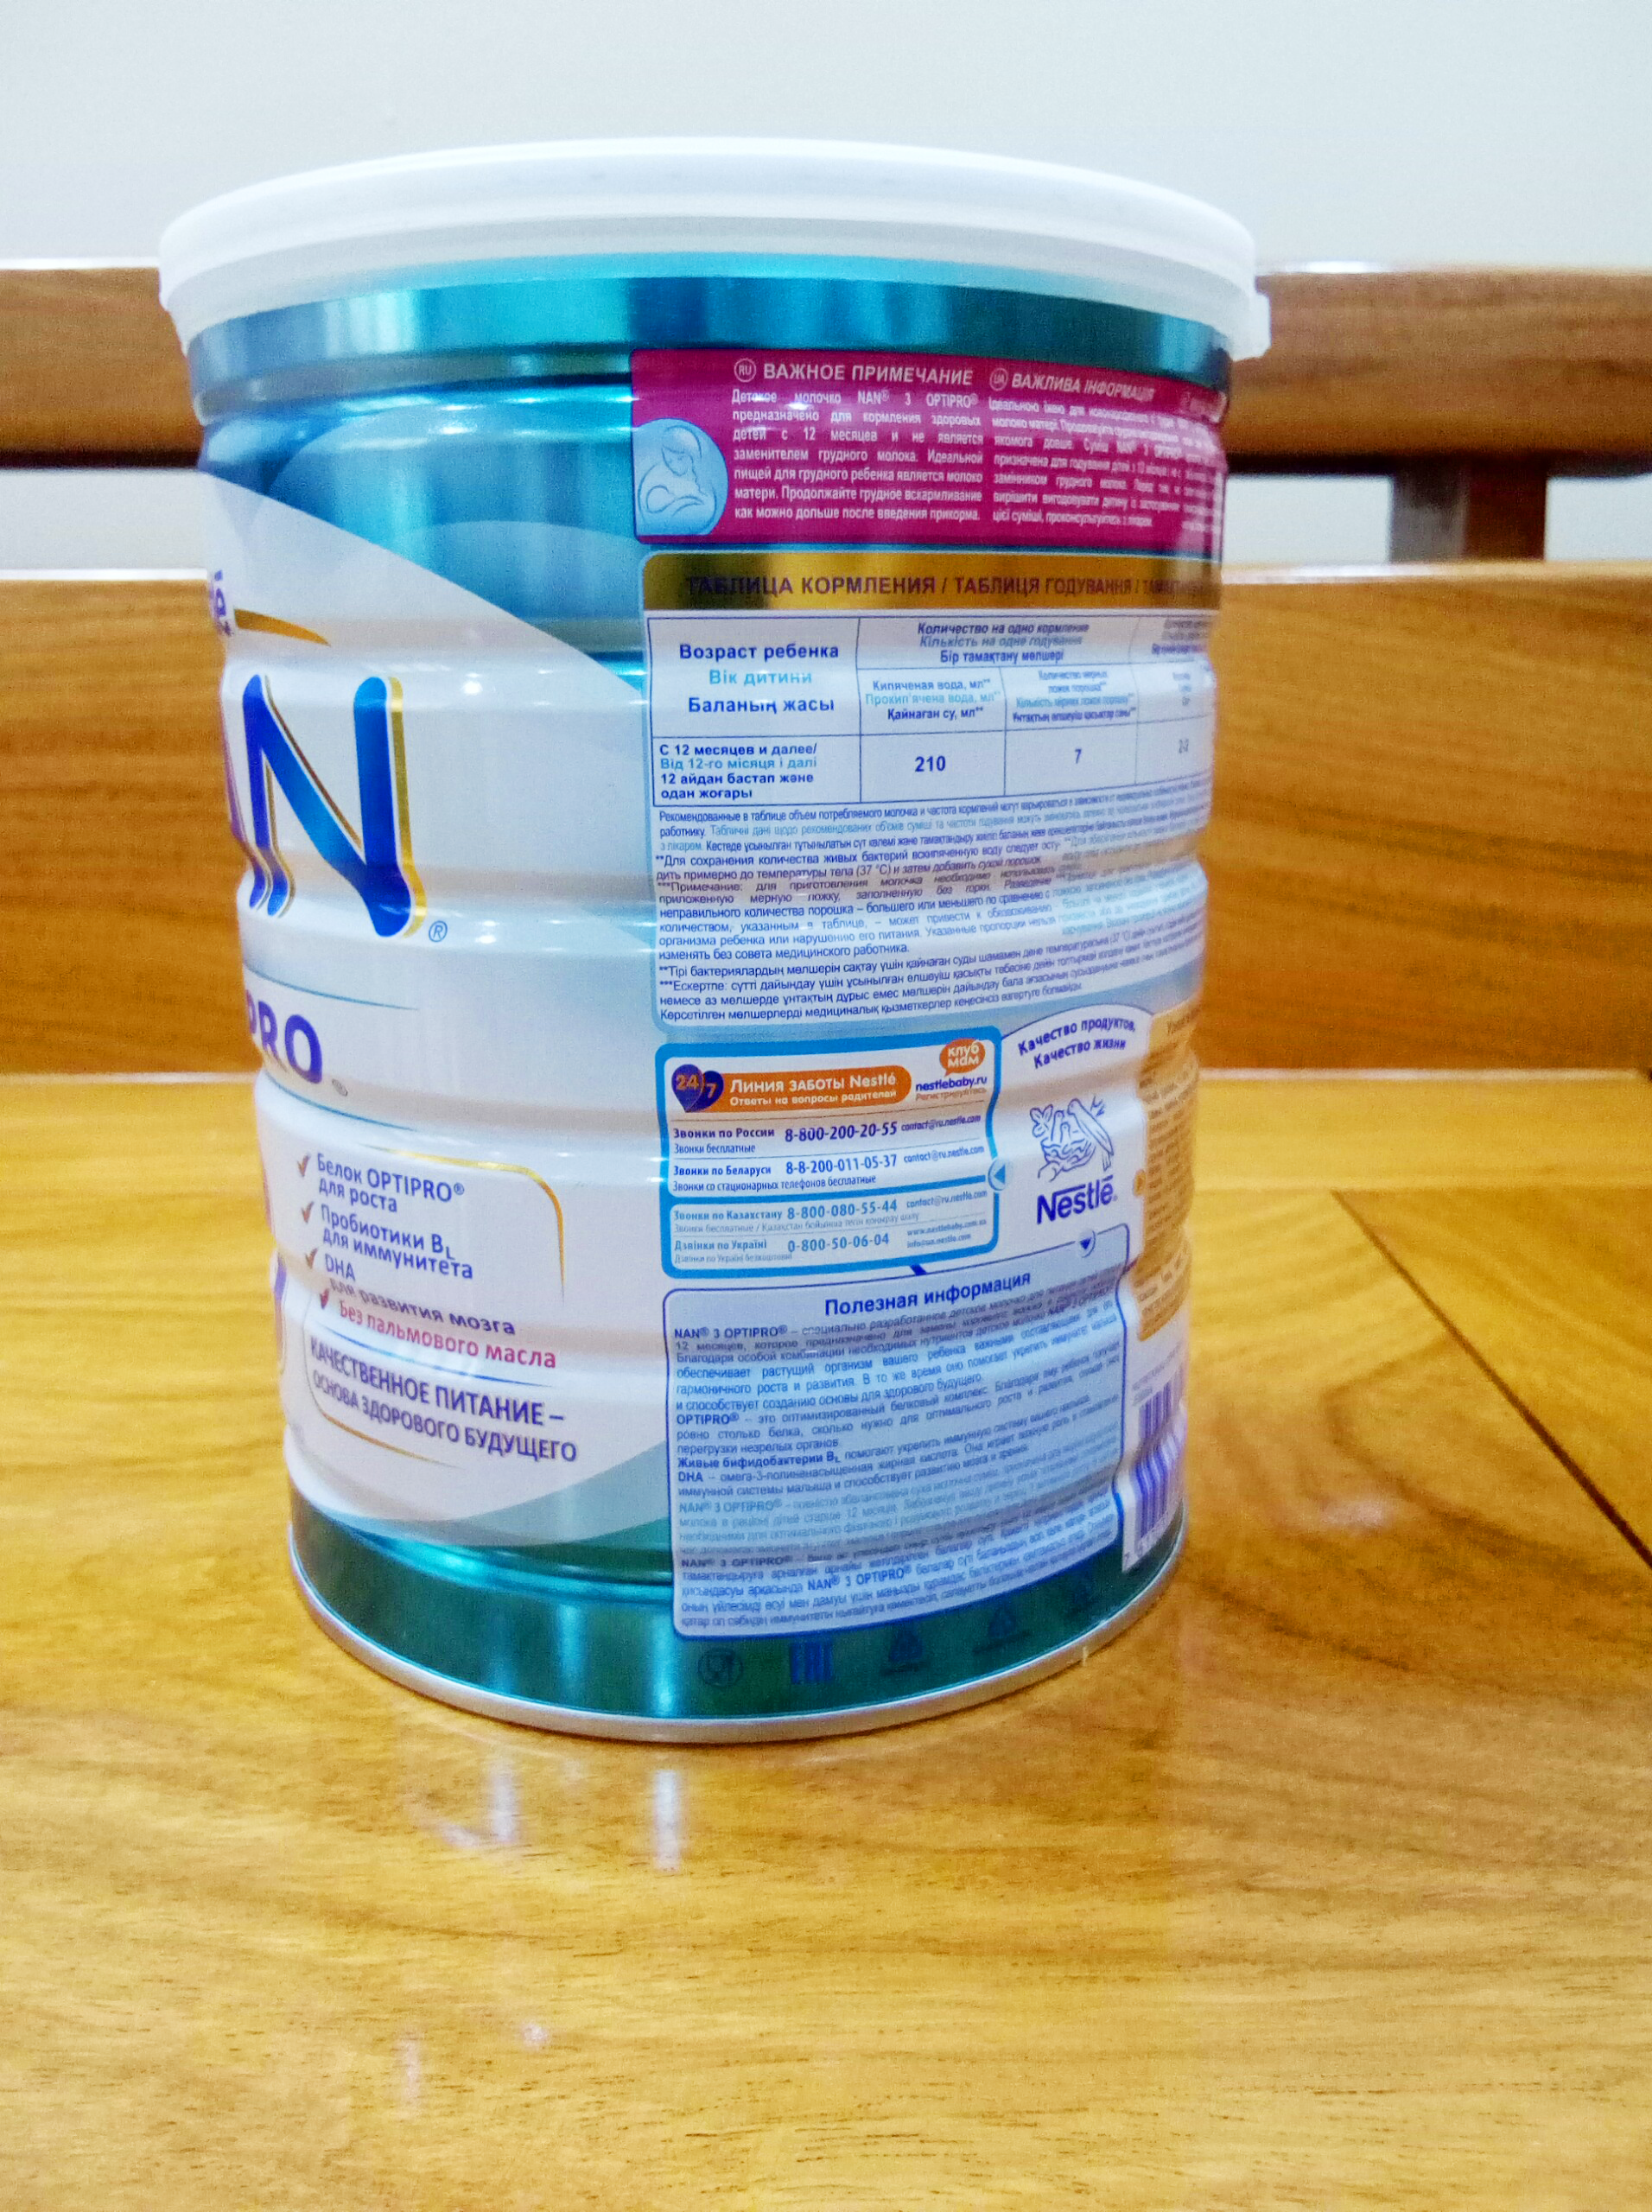 Sữa Nan Optipro từ 1 đến 4 của Nestlé 800g